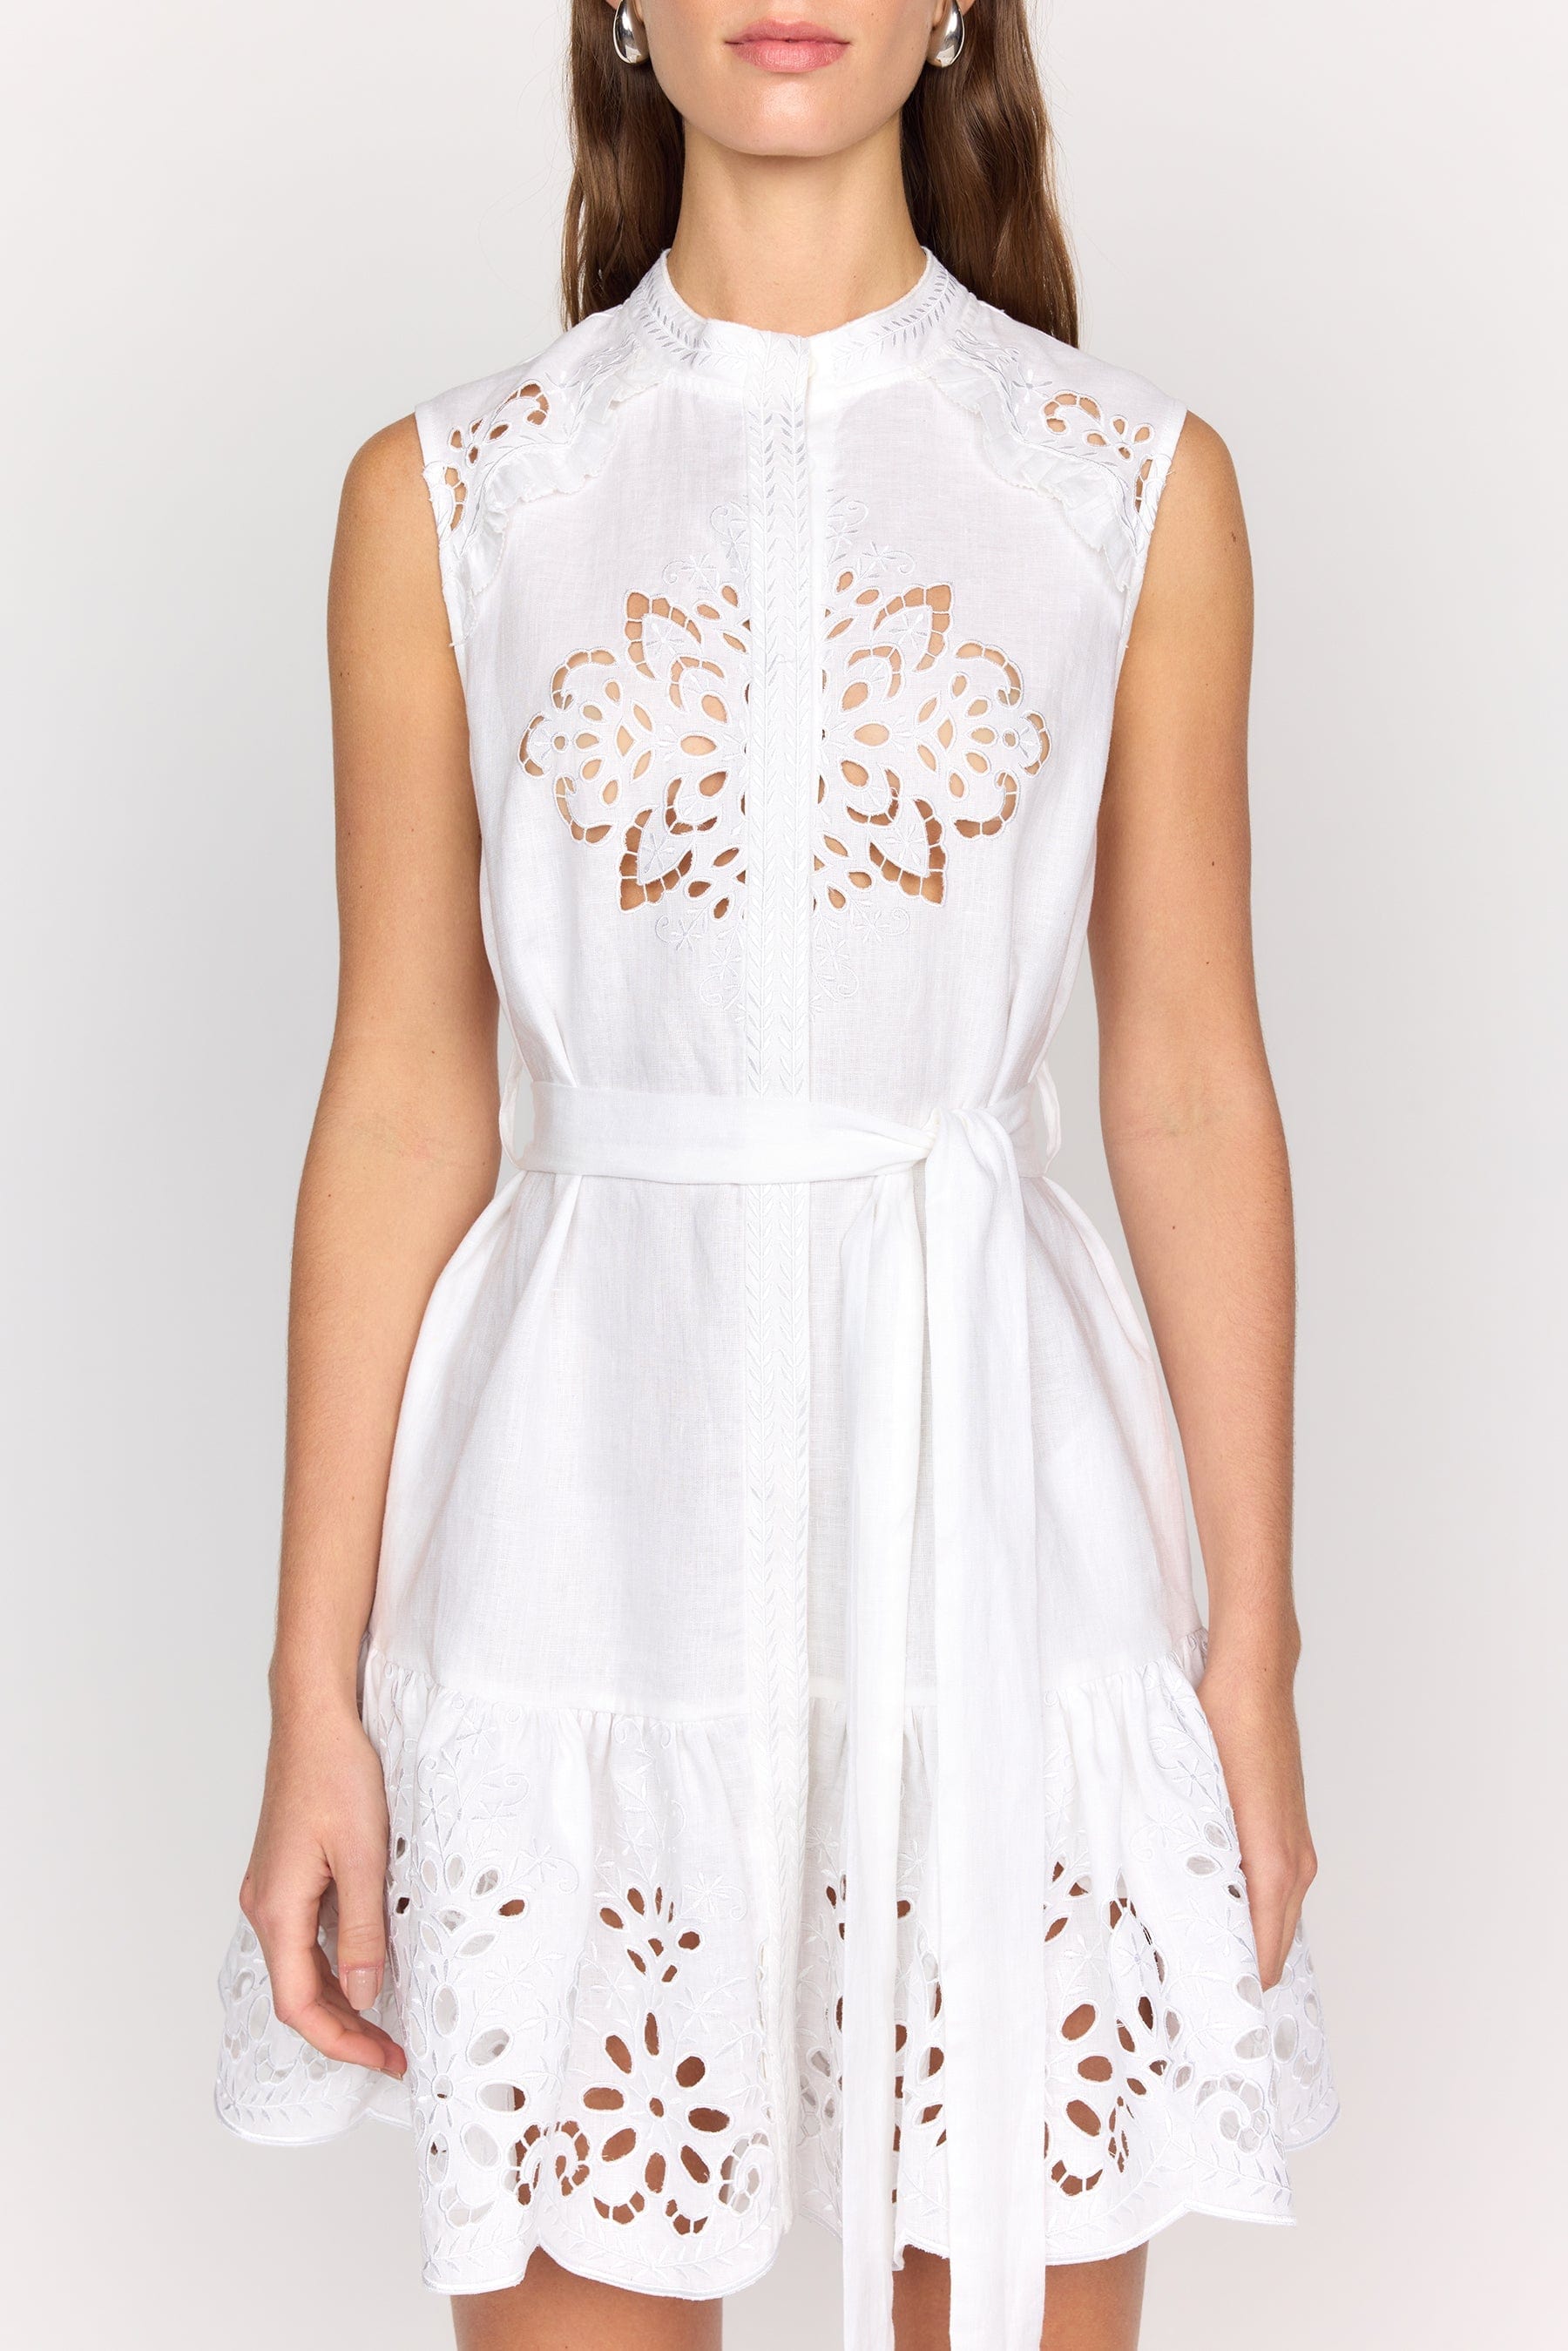 CHRISTY LYNN Dresses Janelle Dress - White